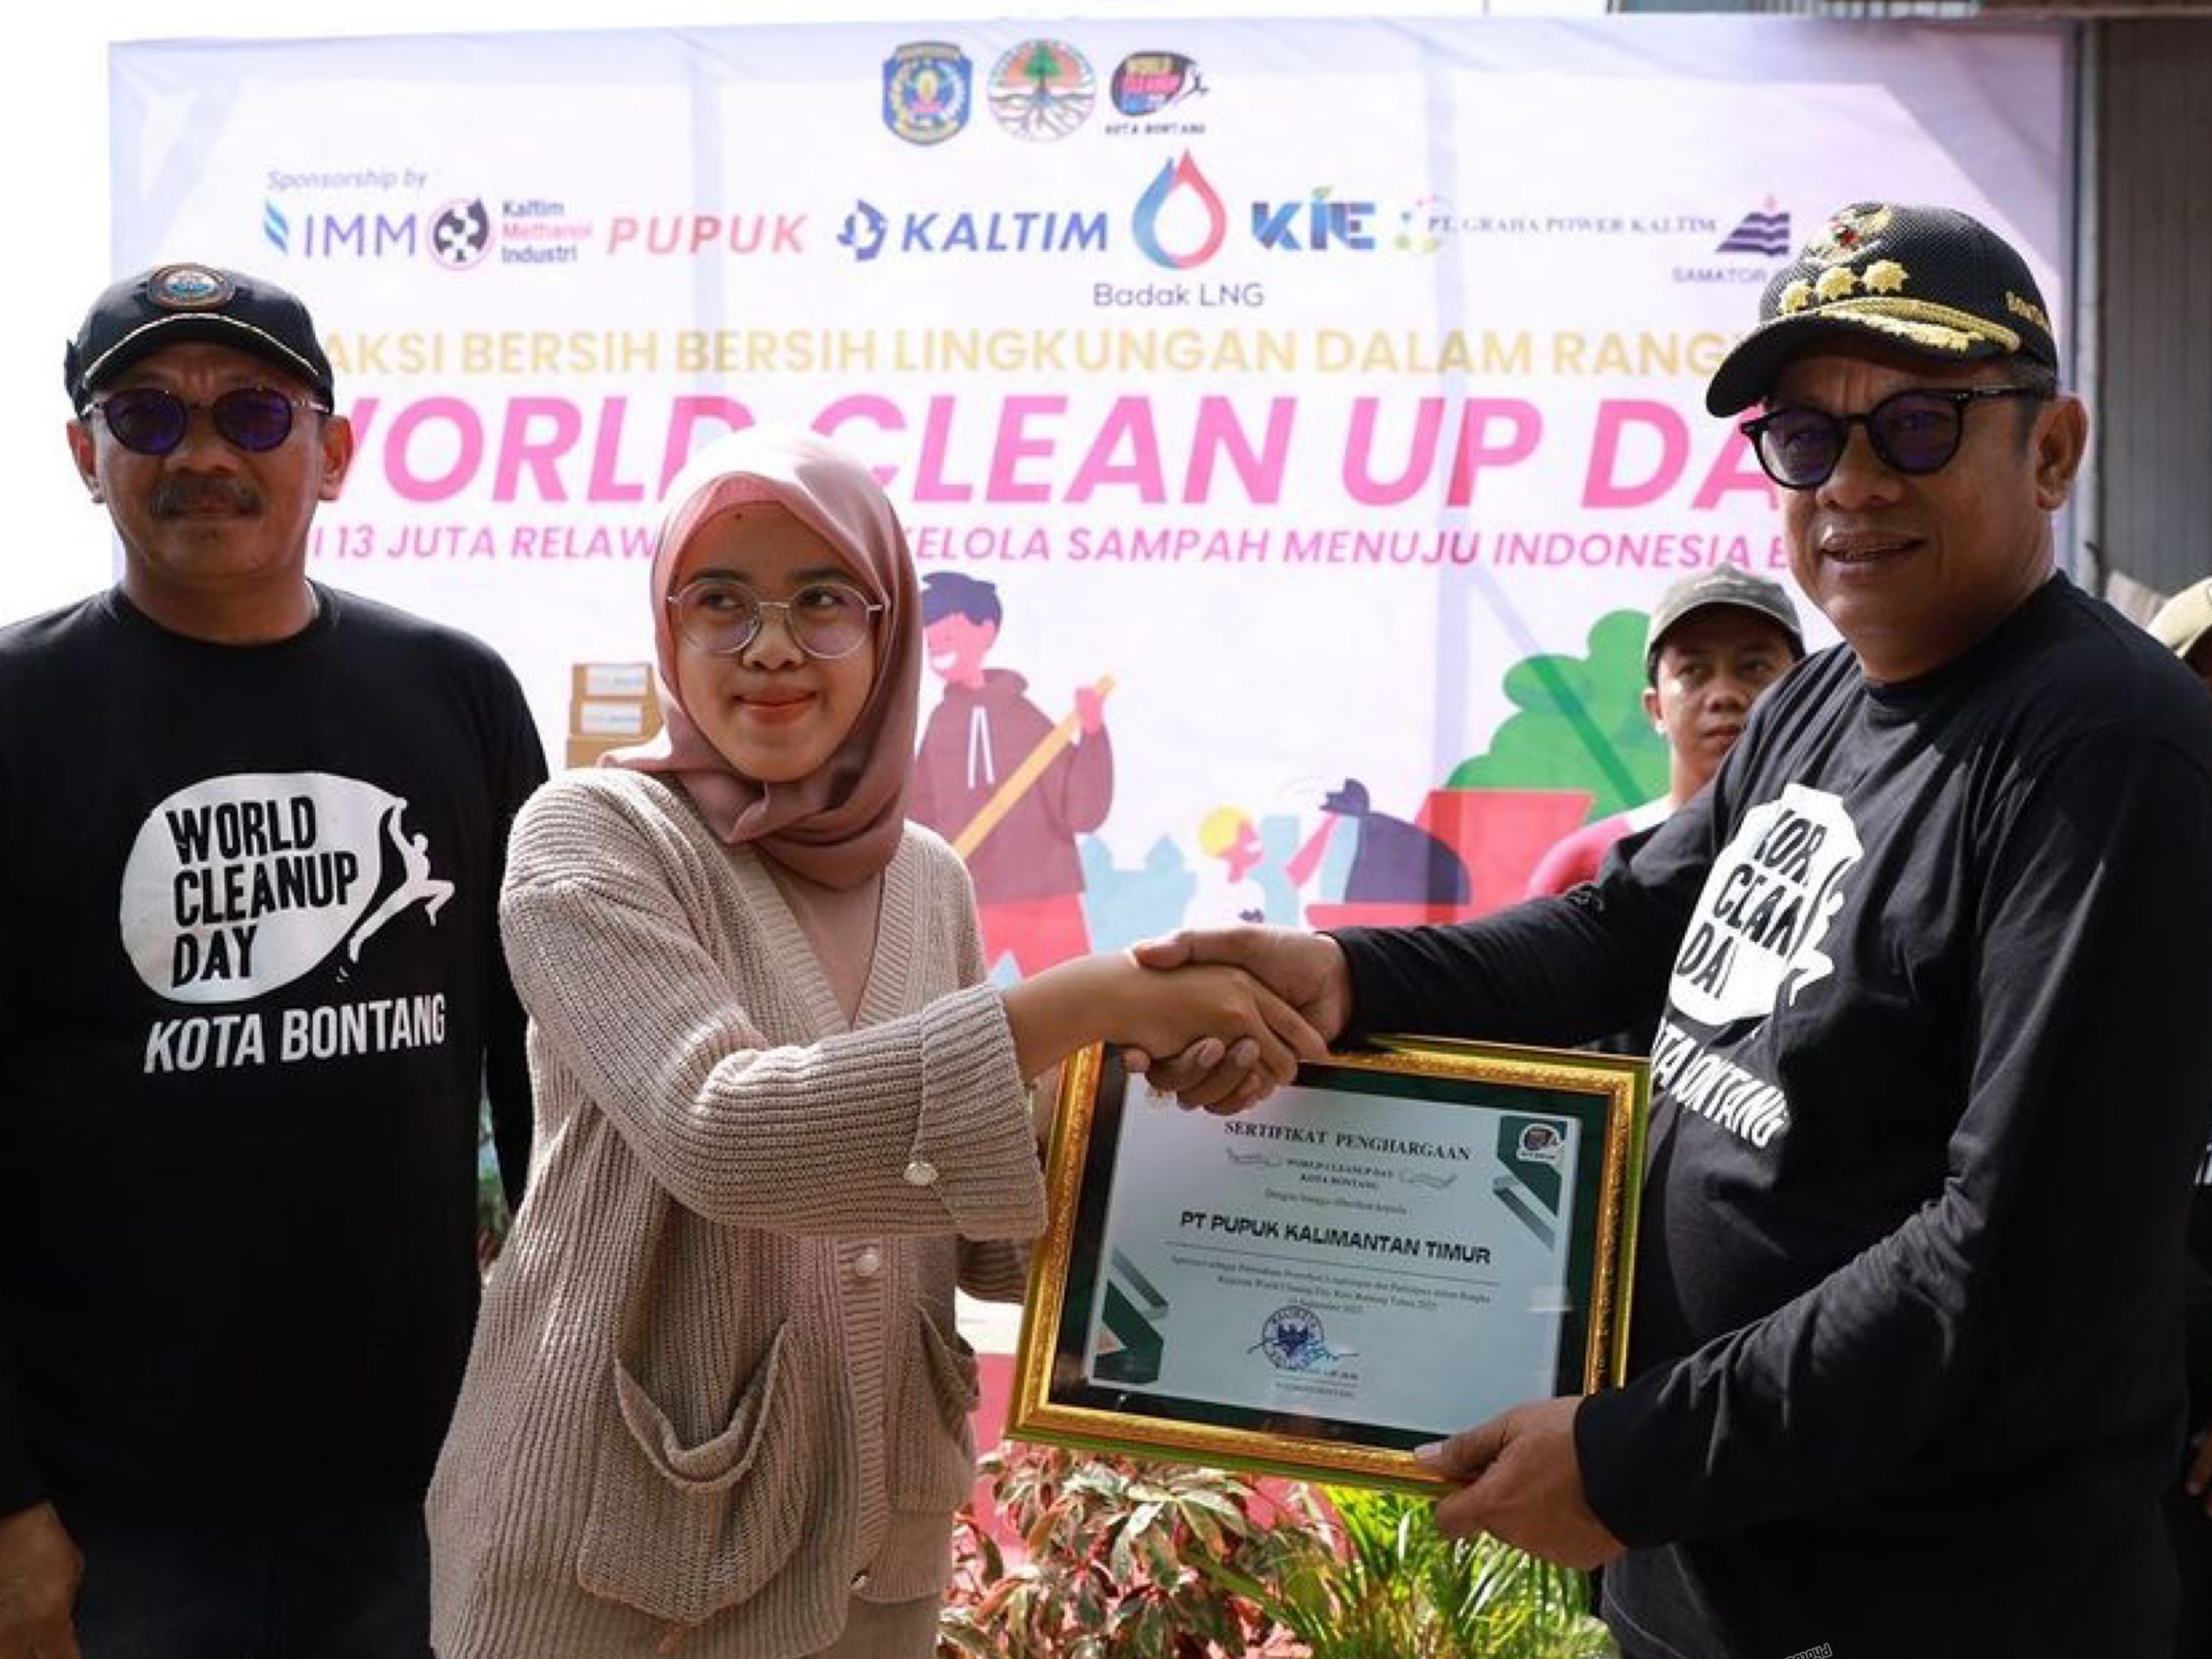 Peringati Hari Lingkungan Hidup Sedunia, Pemkot Bontang Goting Royong Bersih-bersih bareng Perusahaan